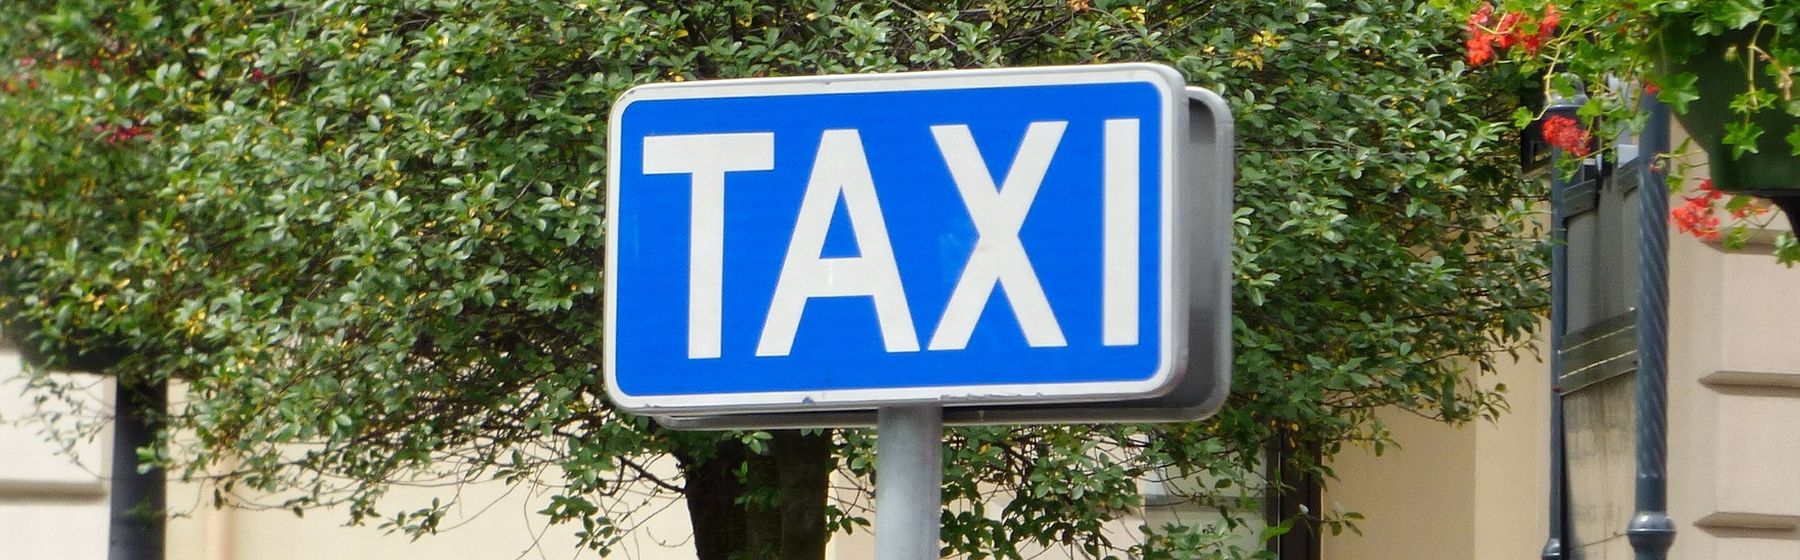 Taksówkarze w Poznaniu pod lupą – czas na obowiązkową weryfikację